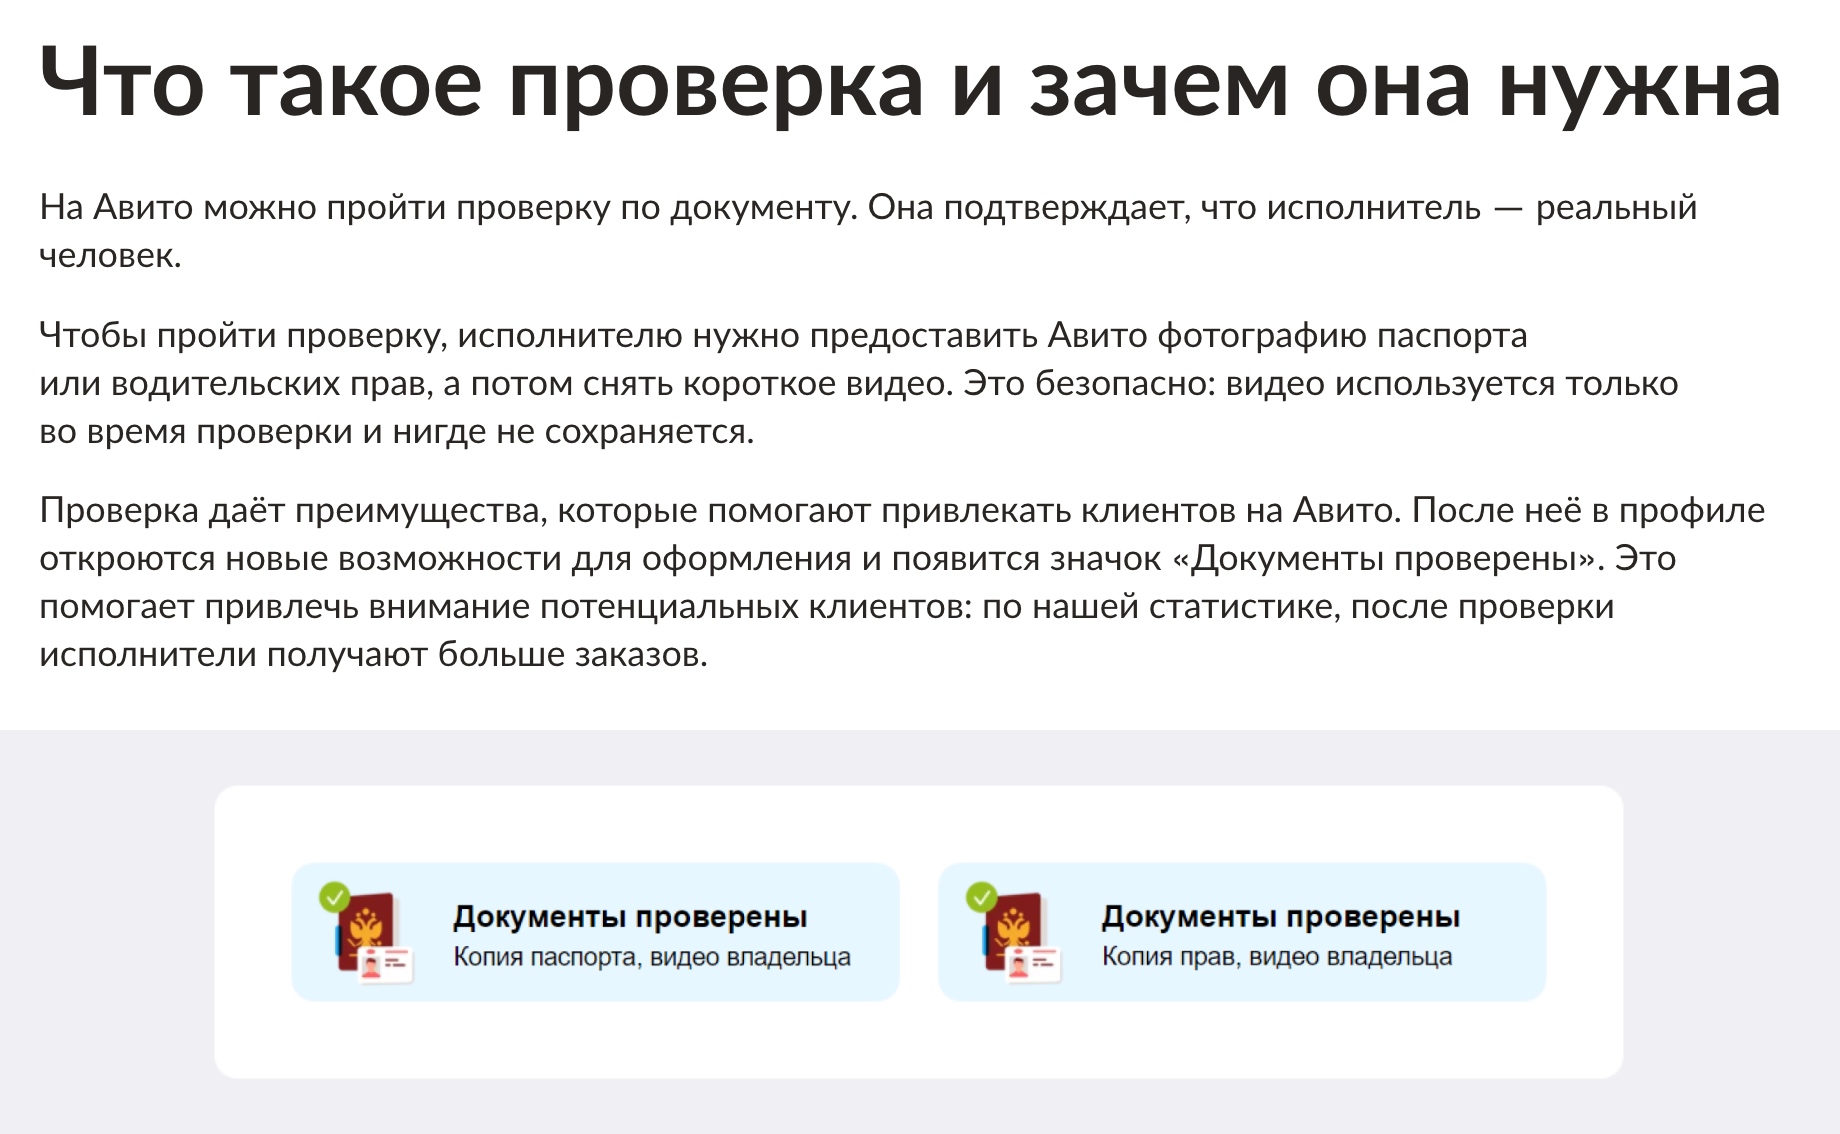 Зеленая галочка в профиле продавца означает, что сервис проверил документы. Источник: avito.ru